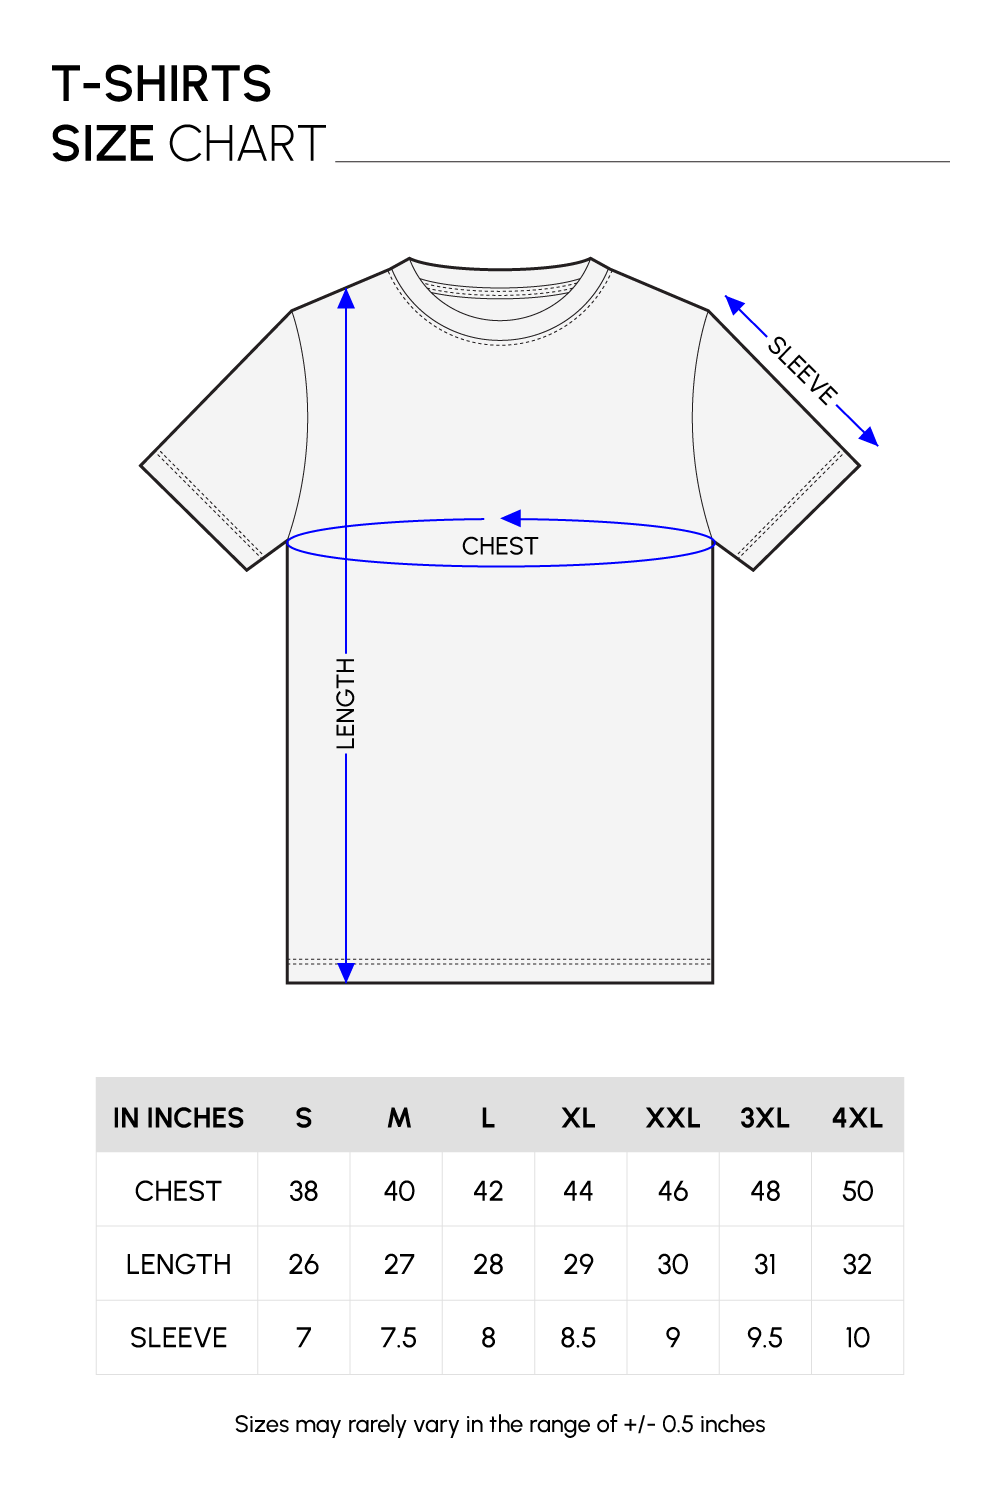 T-shirt Size Chart